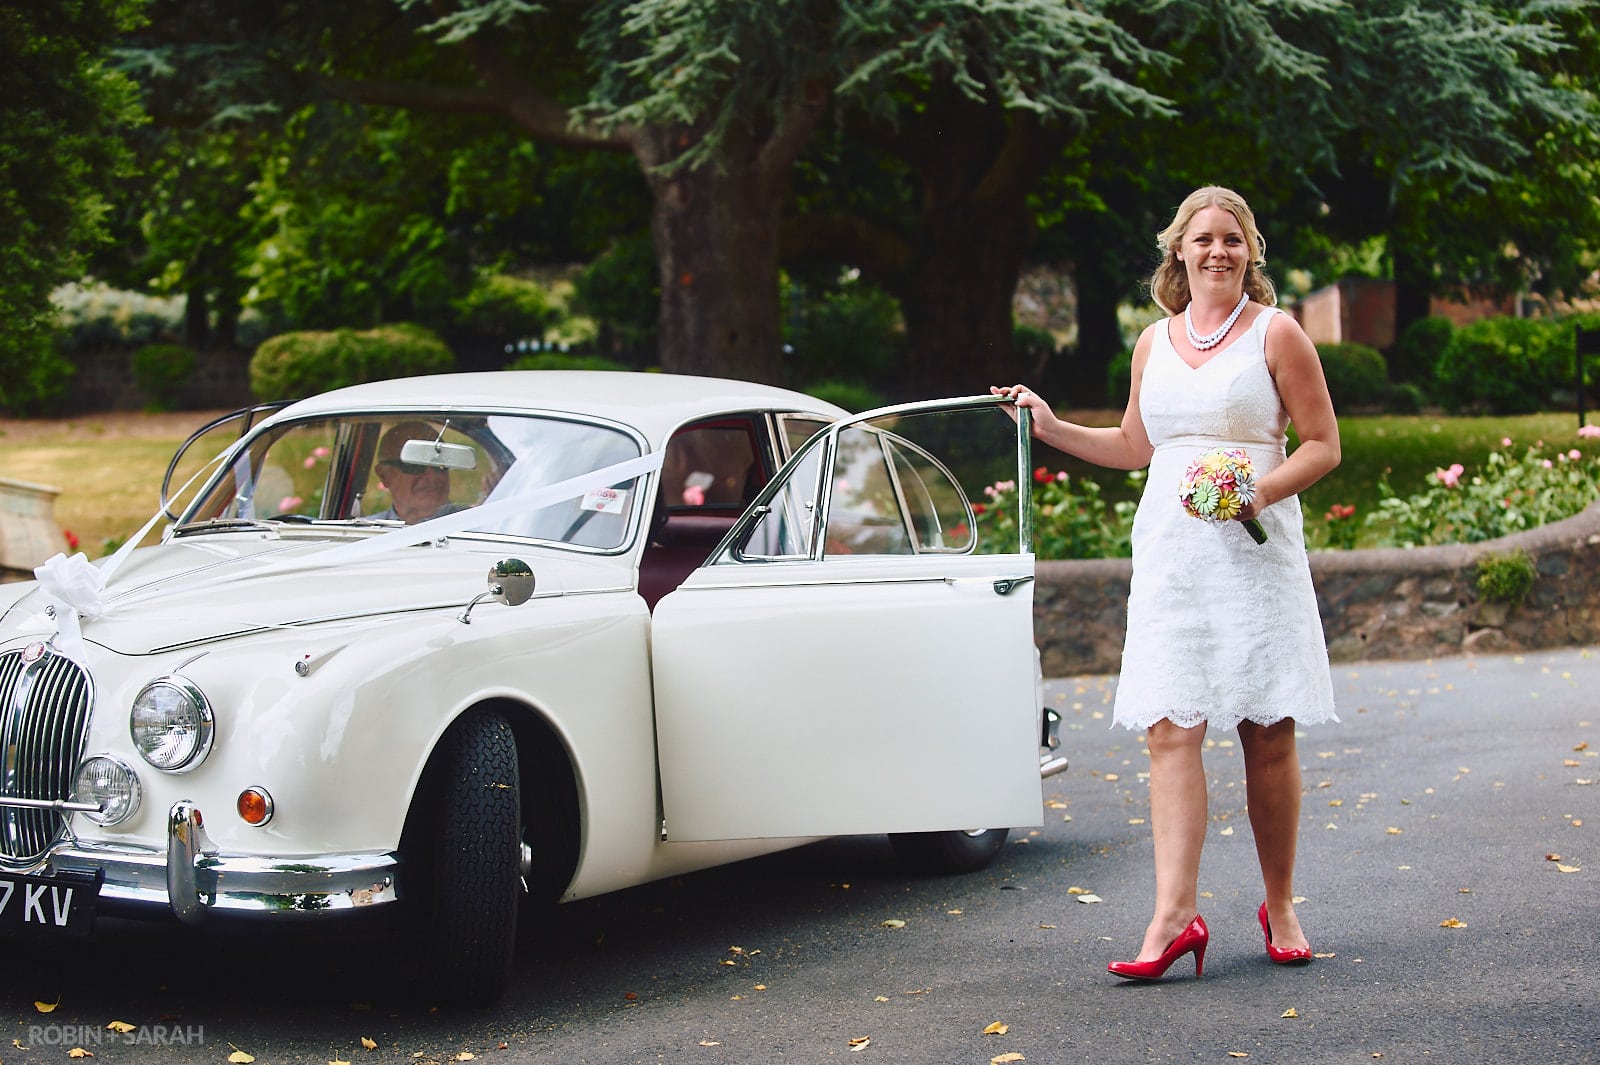 Bride in knee-length white wedding dress arrives in old Jaguar car